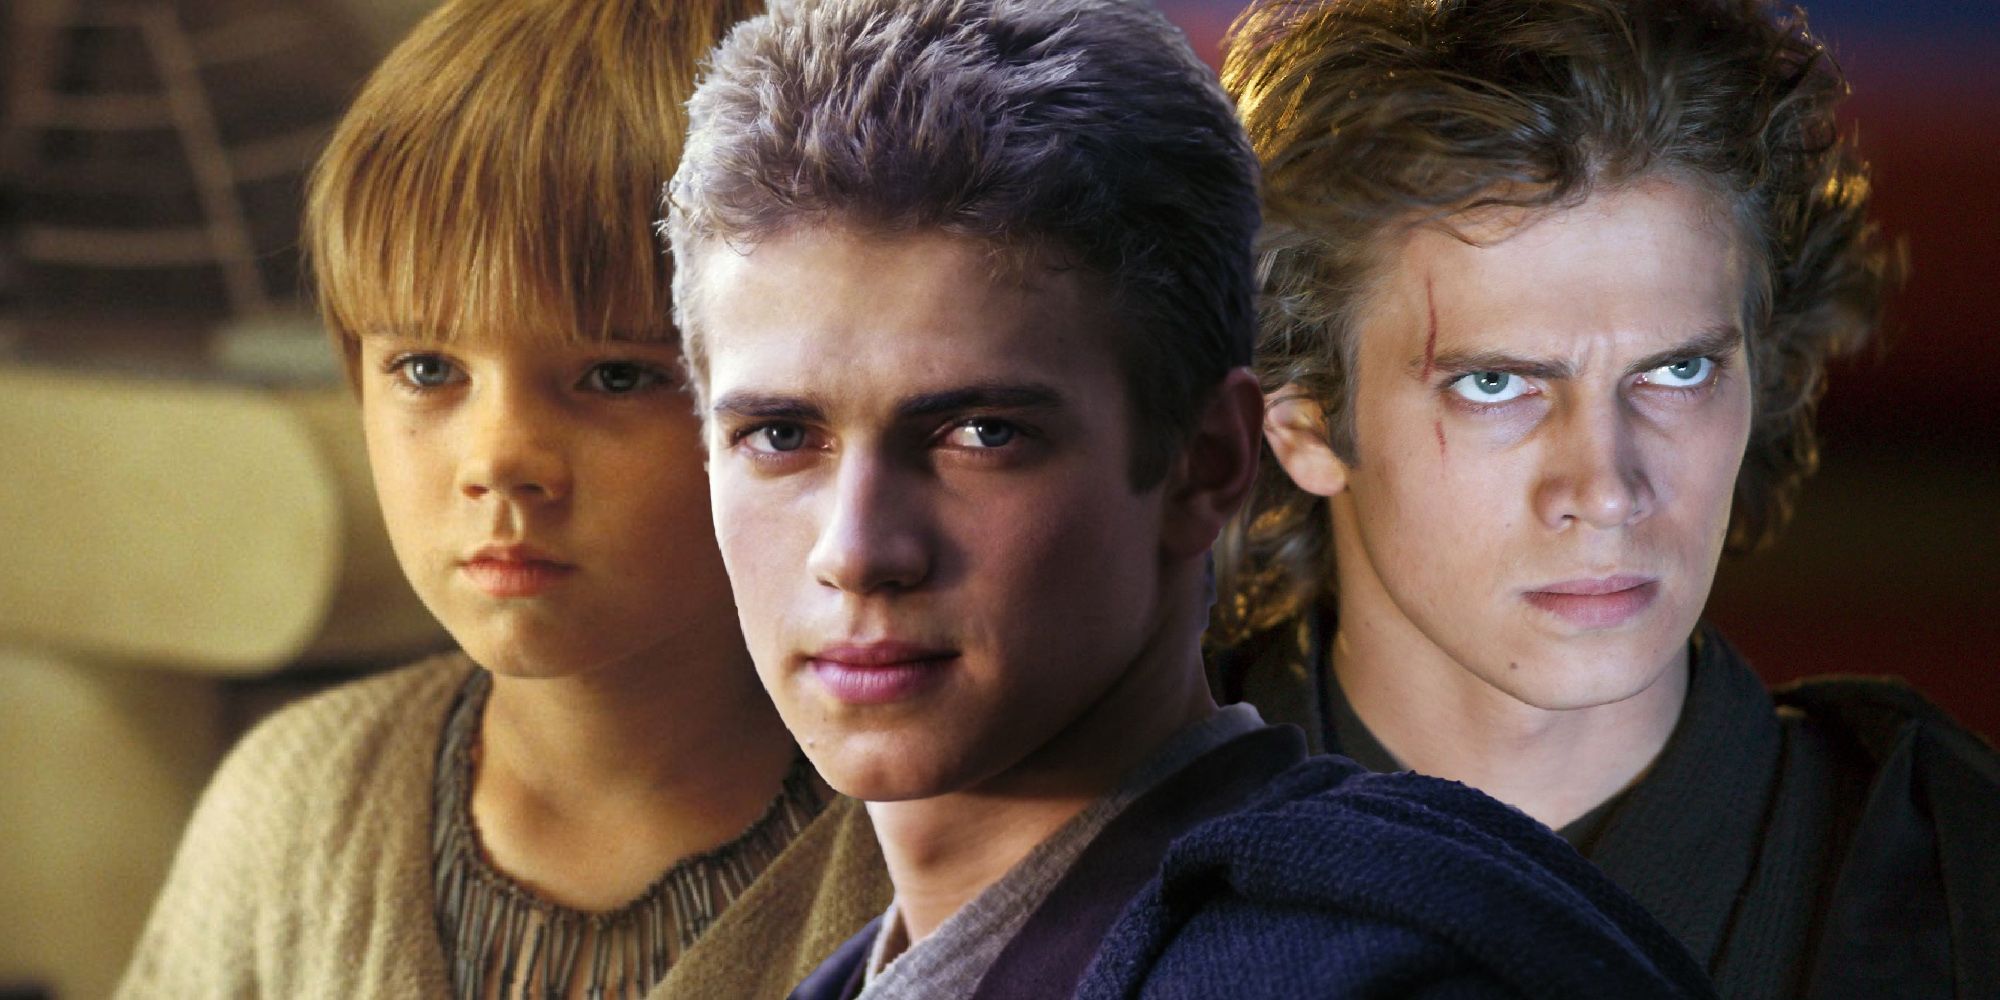 Hayden Christensen defiende la actuación de Anakin Skywalker e identifica el fracaso en las críticas a la precuela